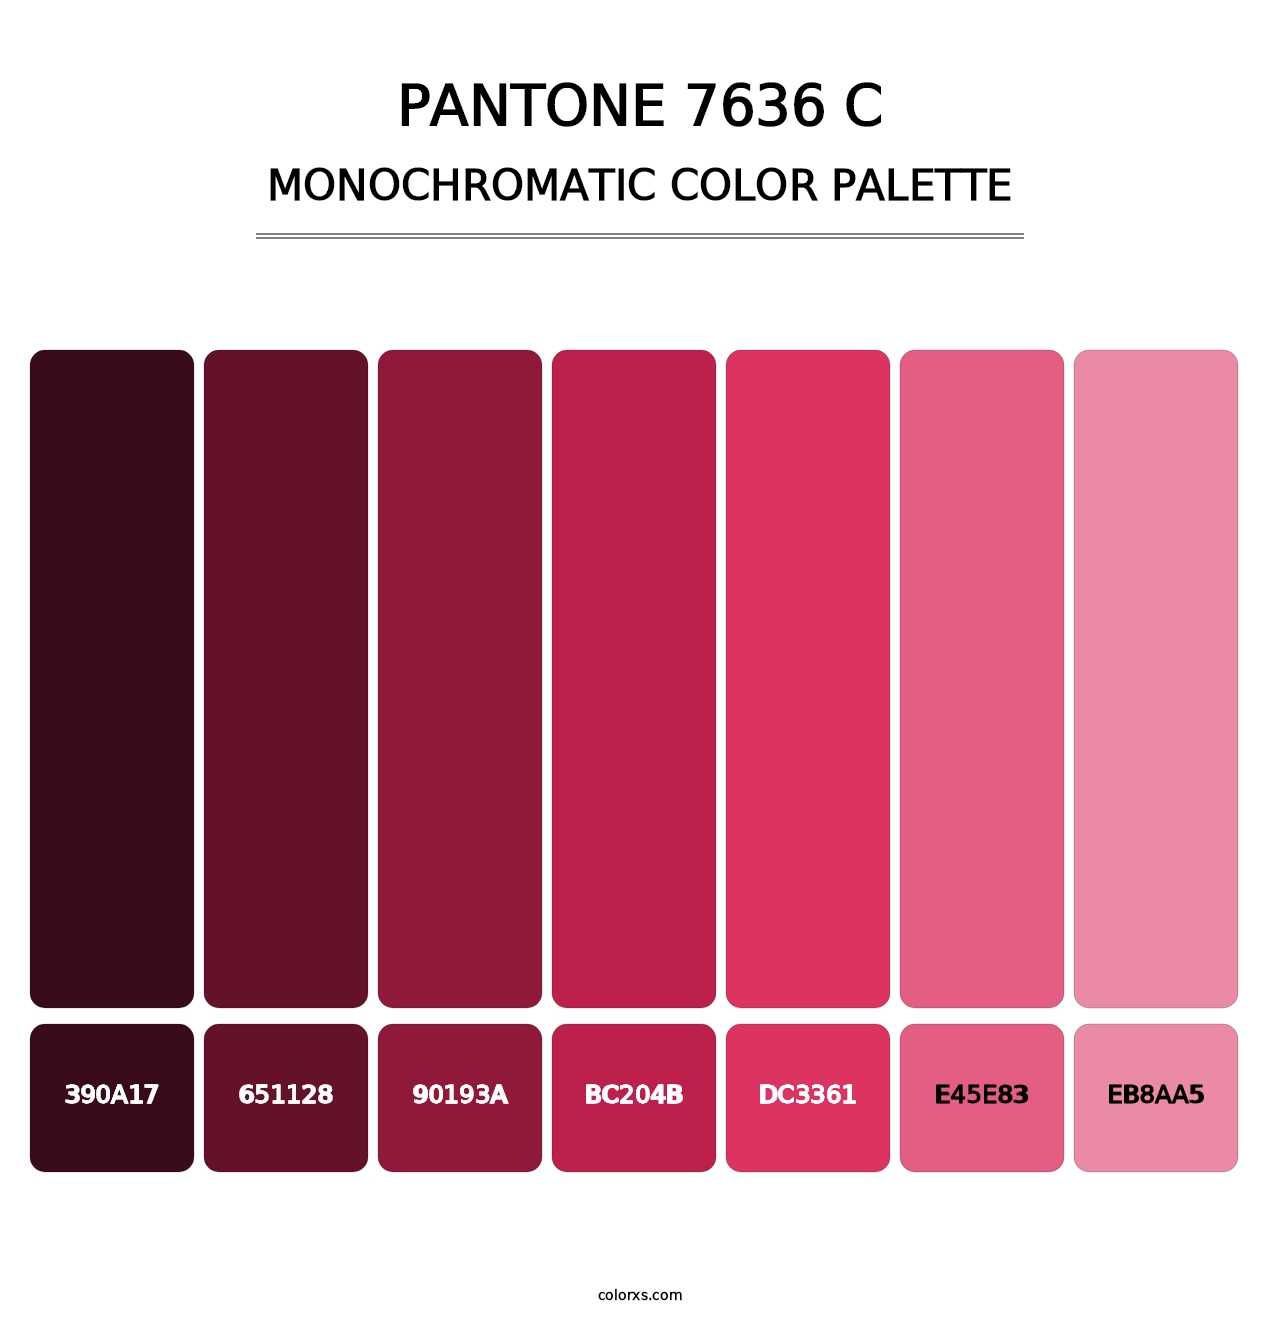 PANTONE 7636 C - Monochromatic Color Palette